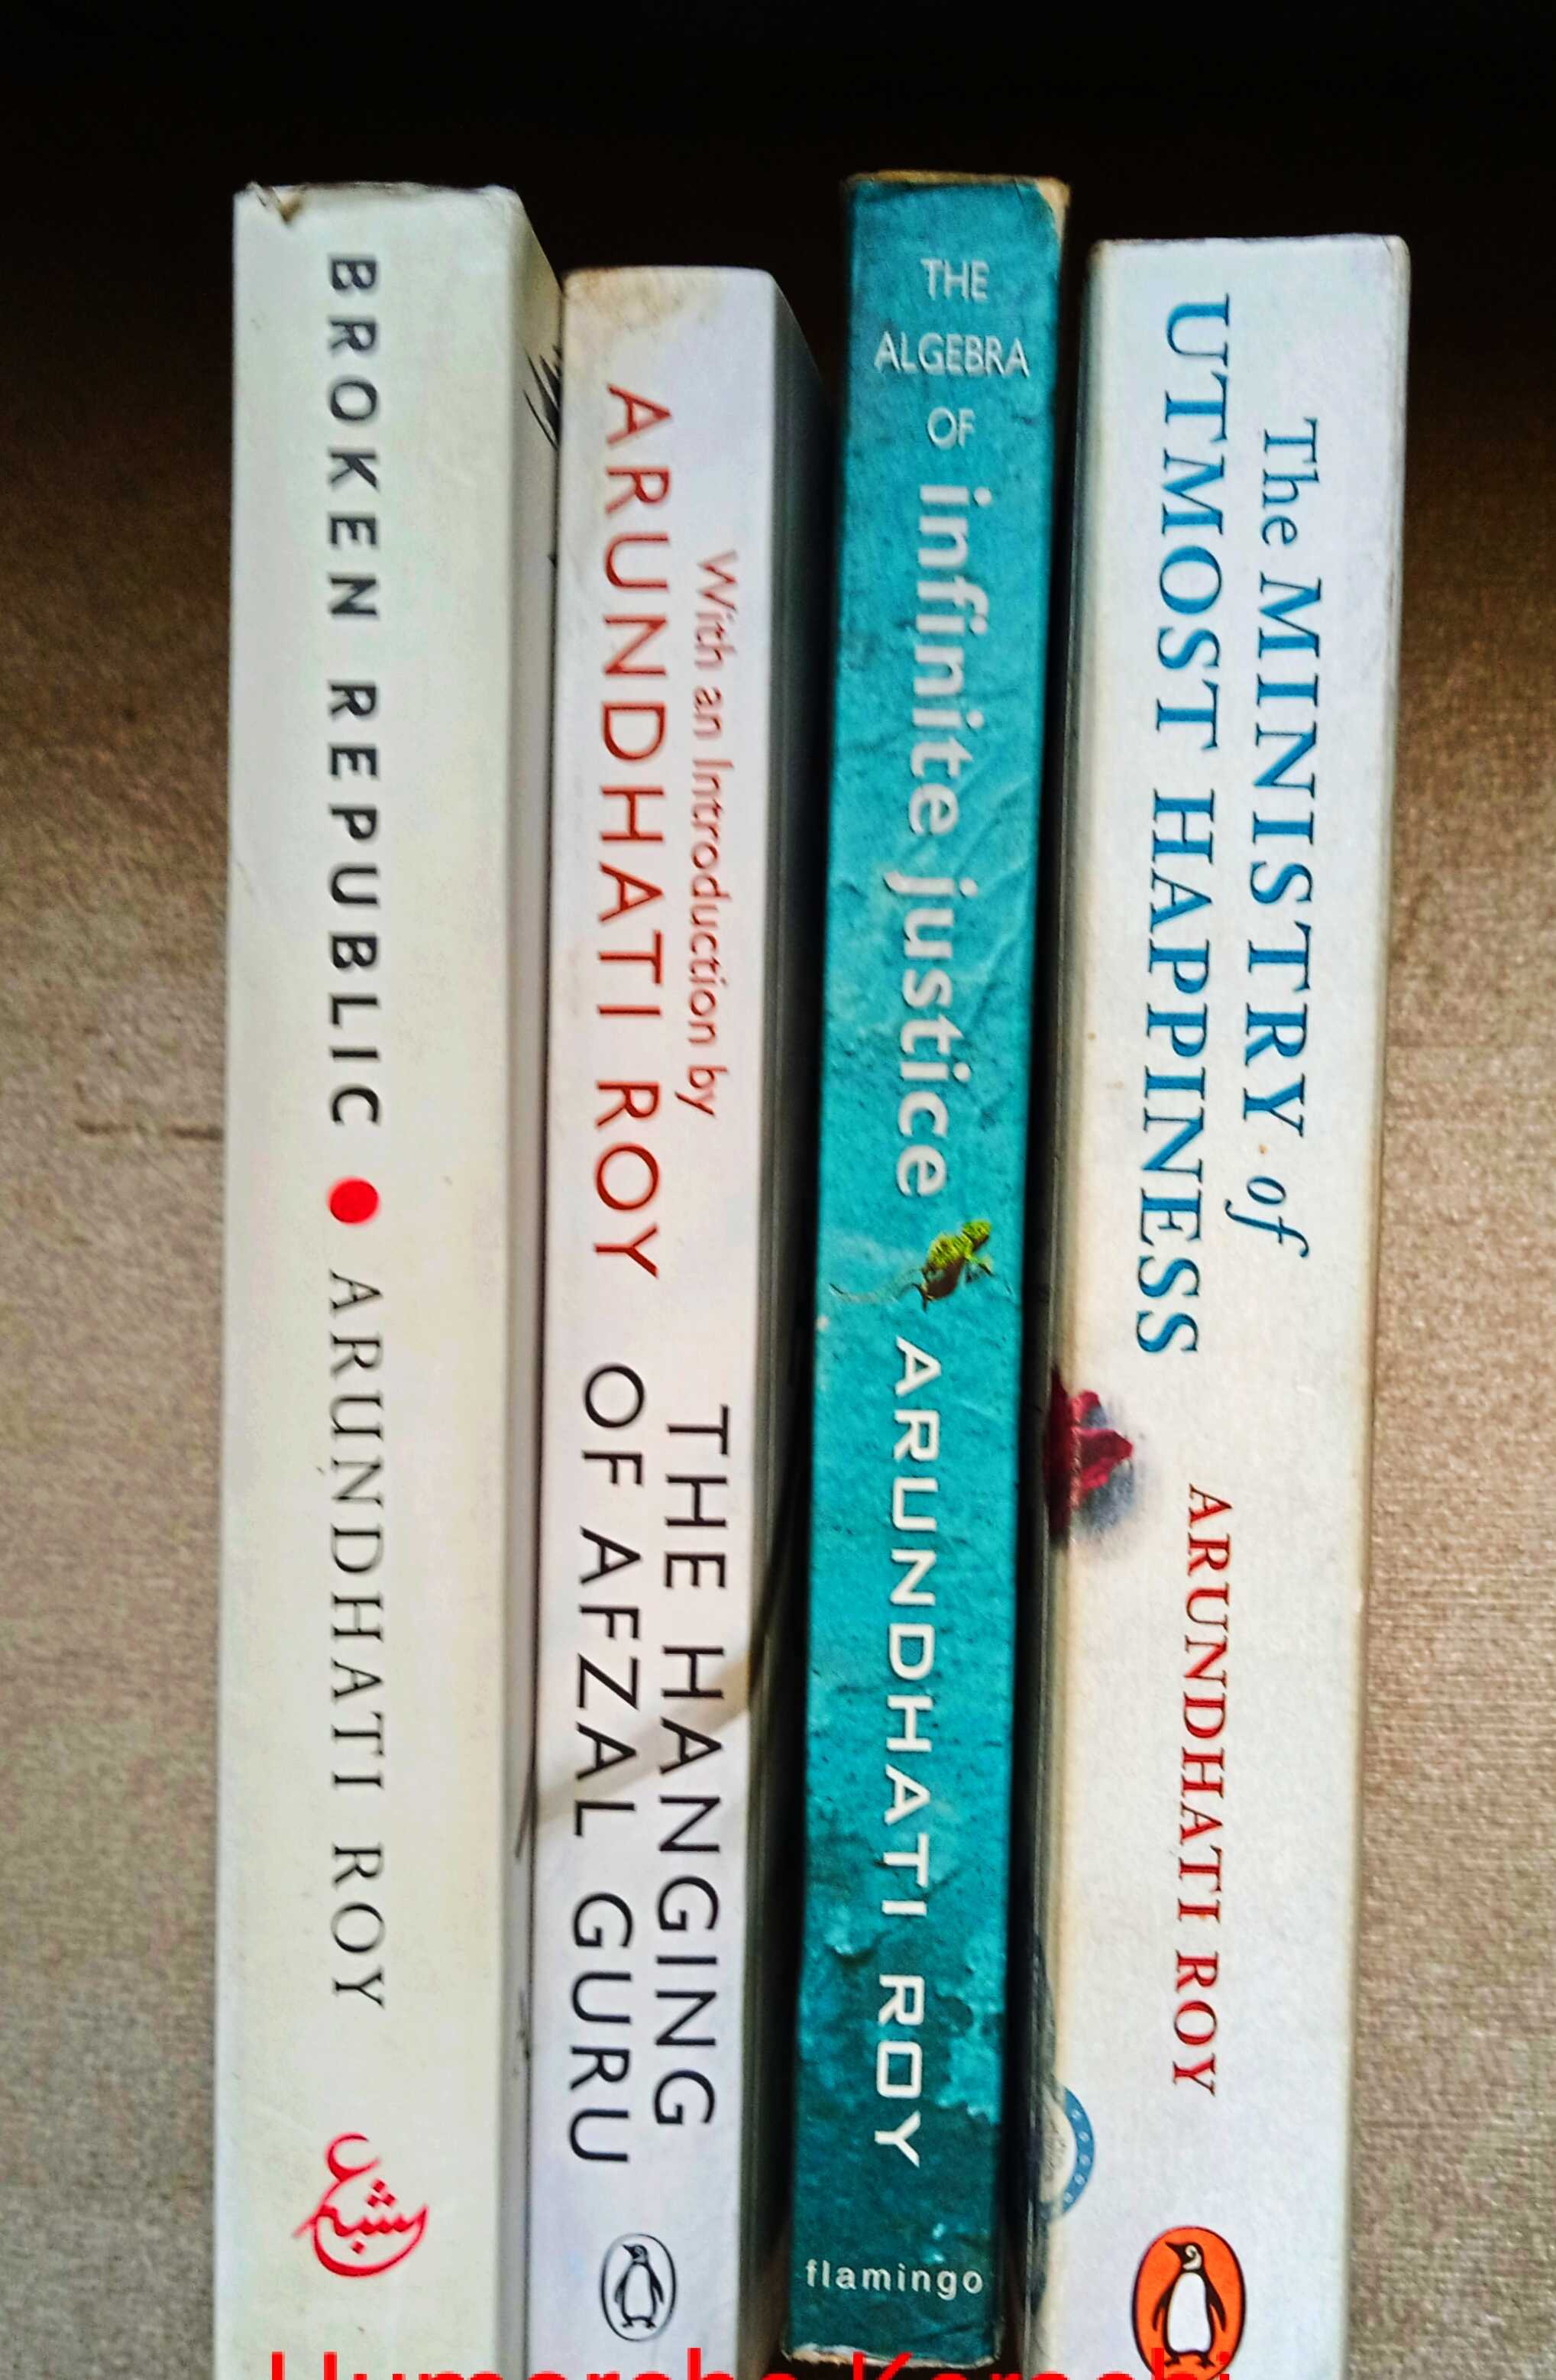 arundhati roy: 4 titles